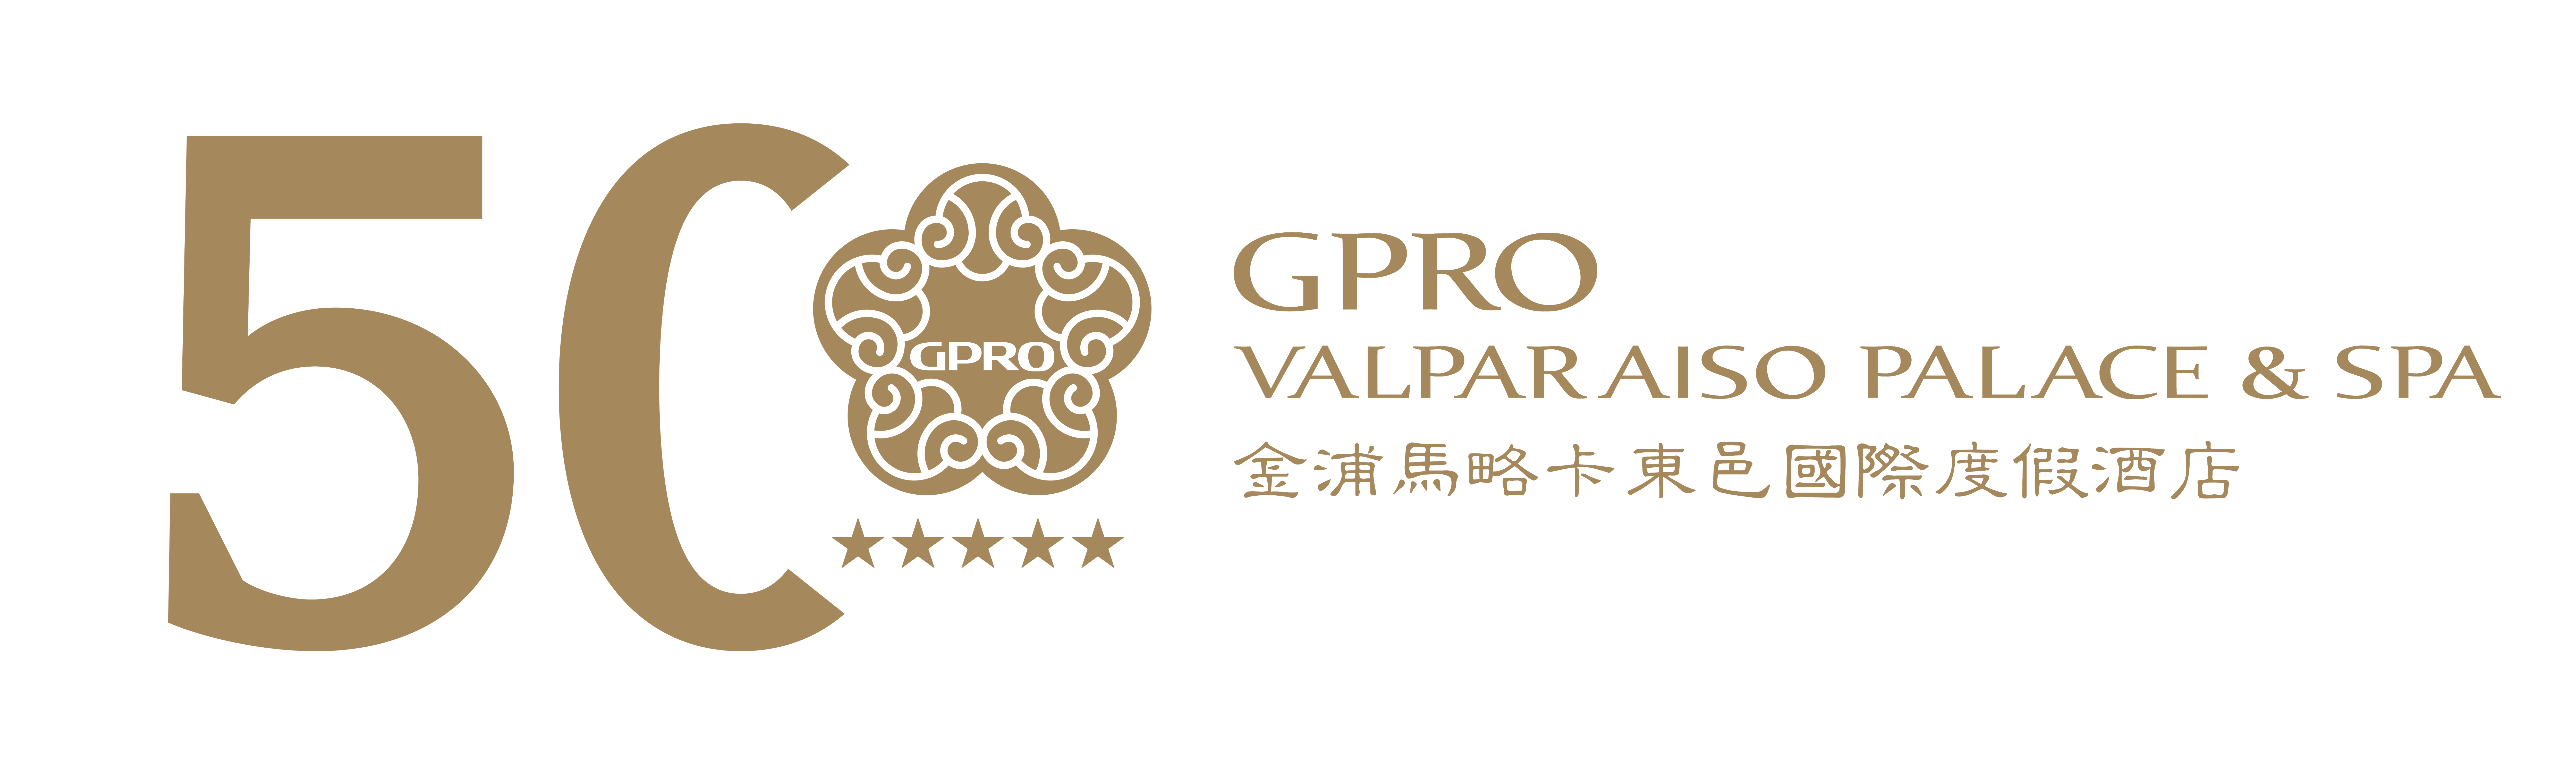 GPRO Valparaíso Palace & Spa